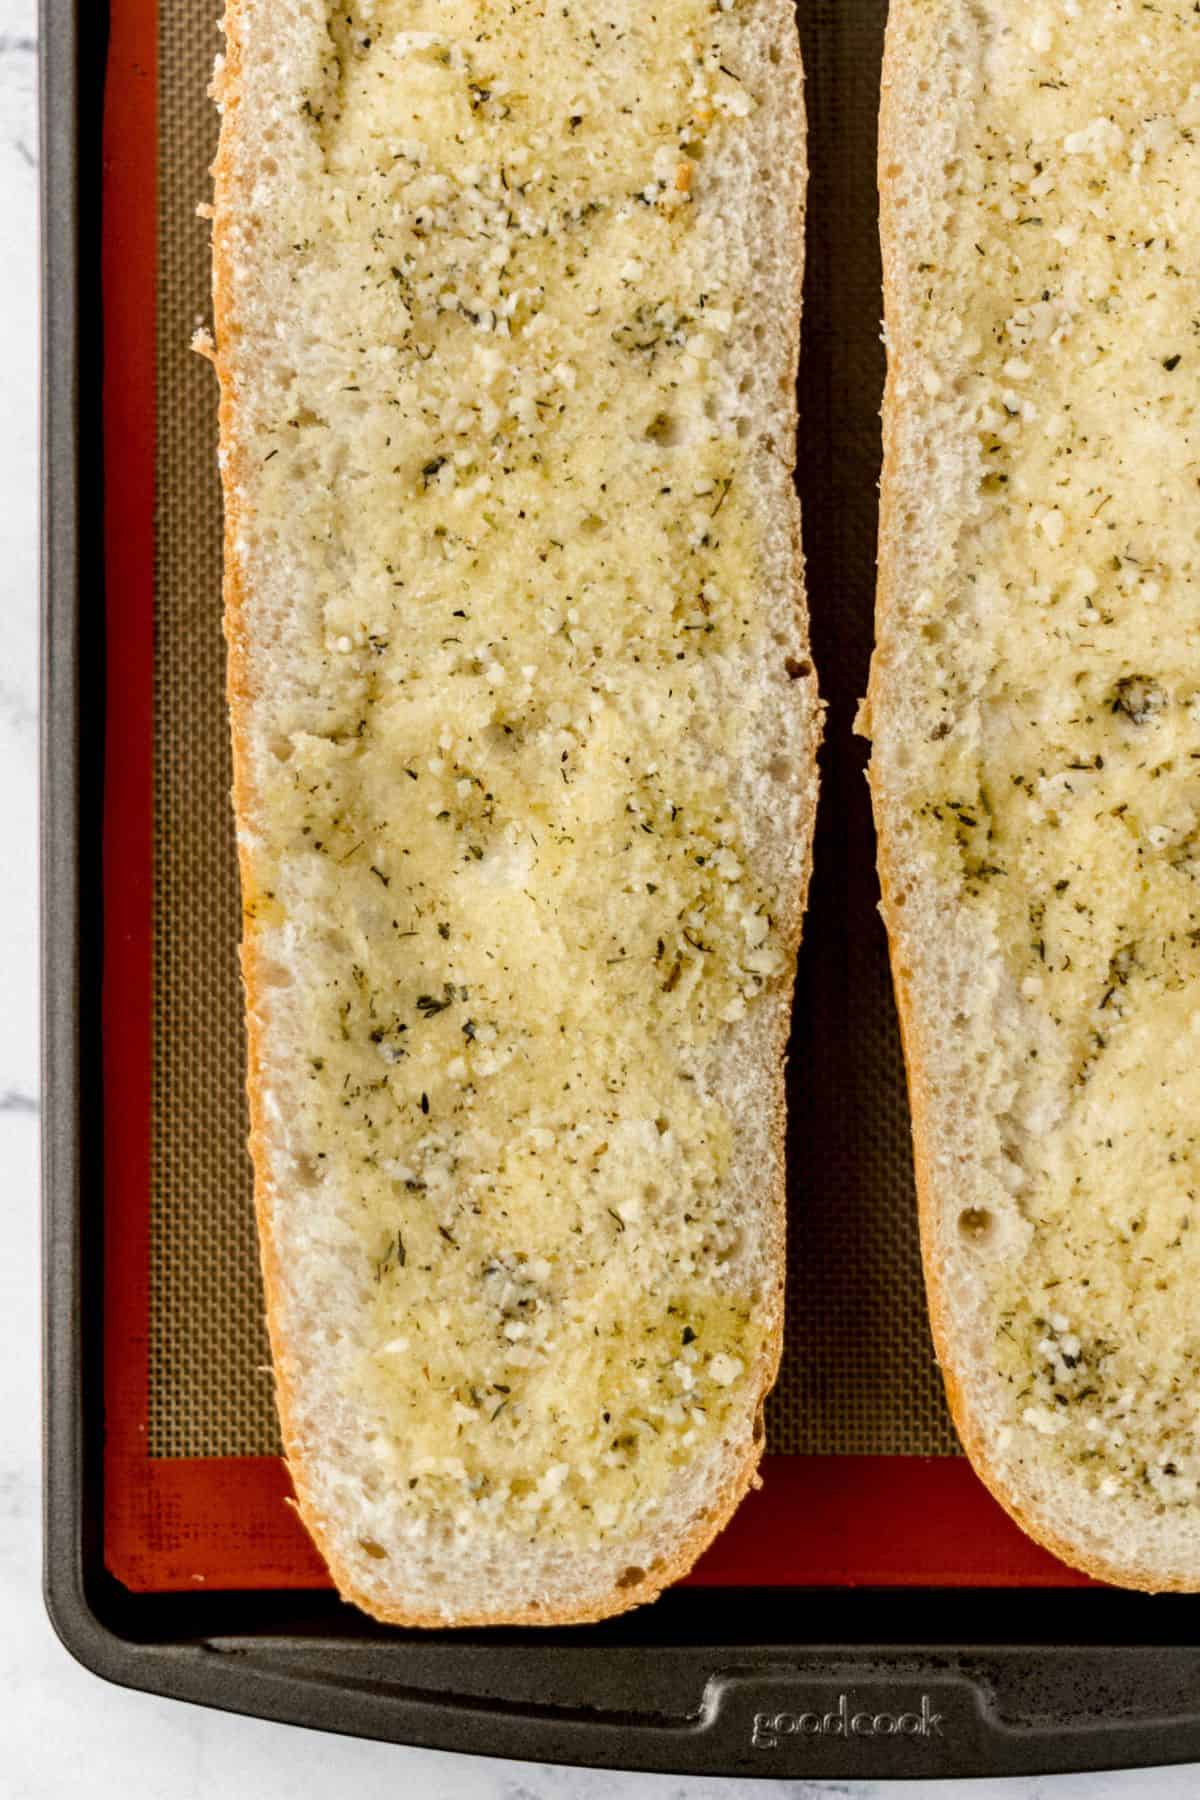 butter mixture spread on bread on baking sheet 